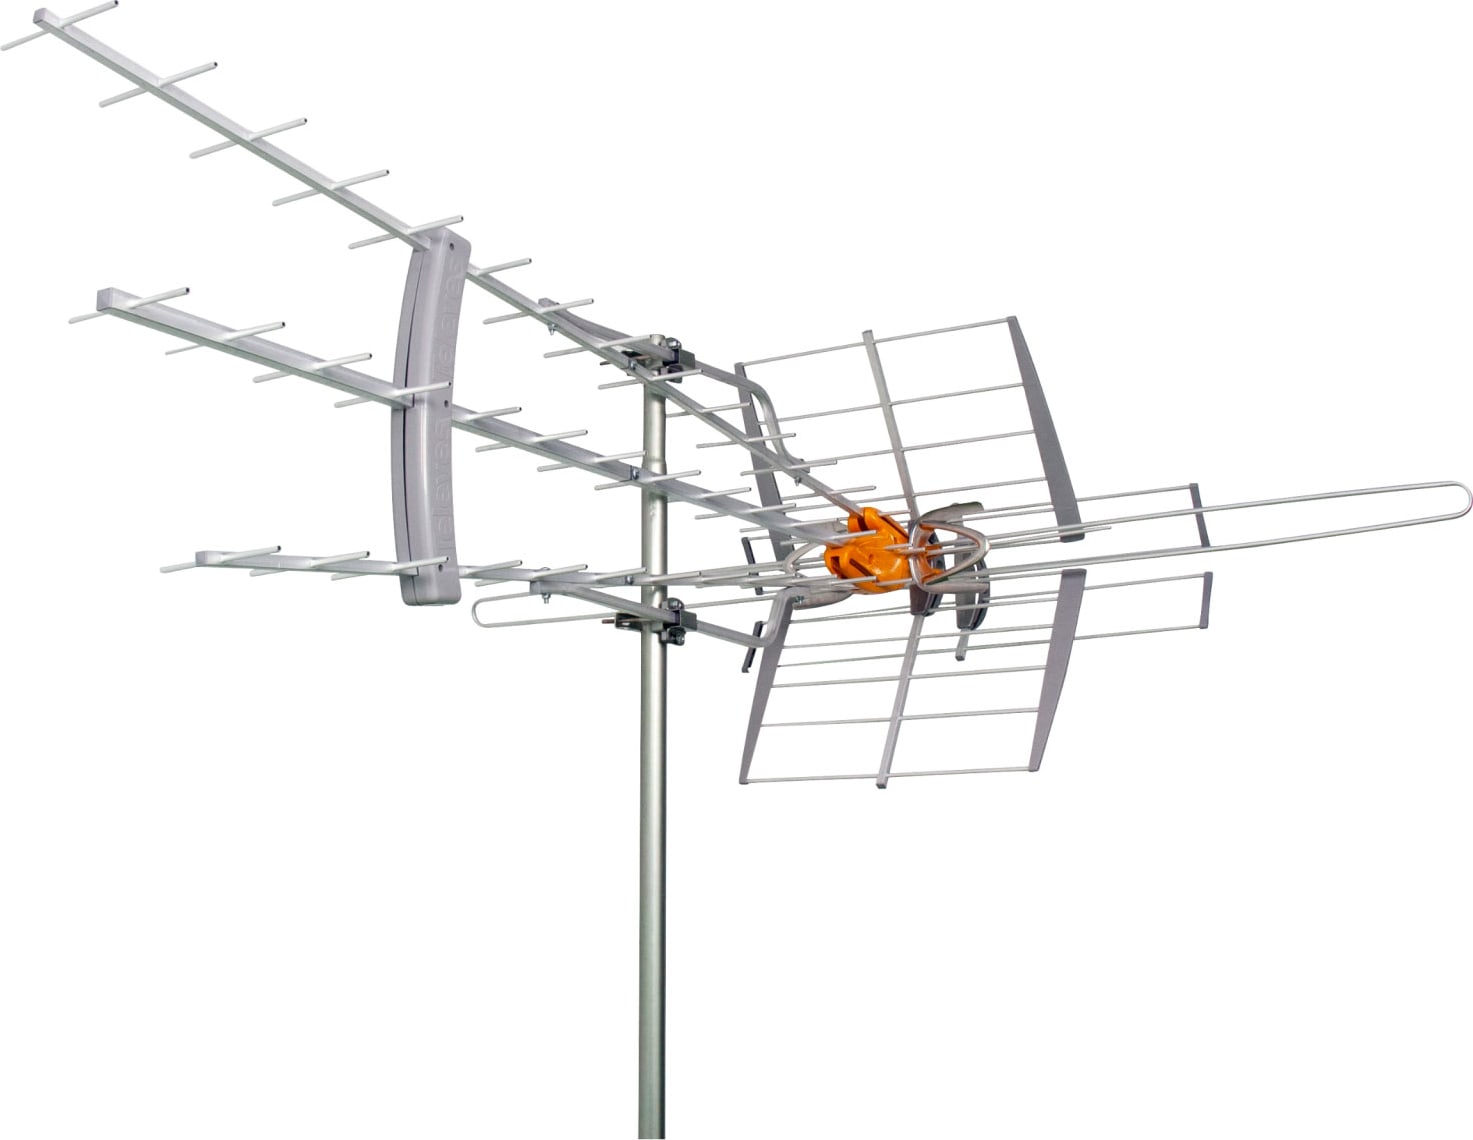 DAT BOSS MIX LR antenna